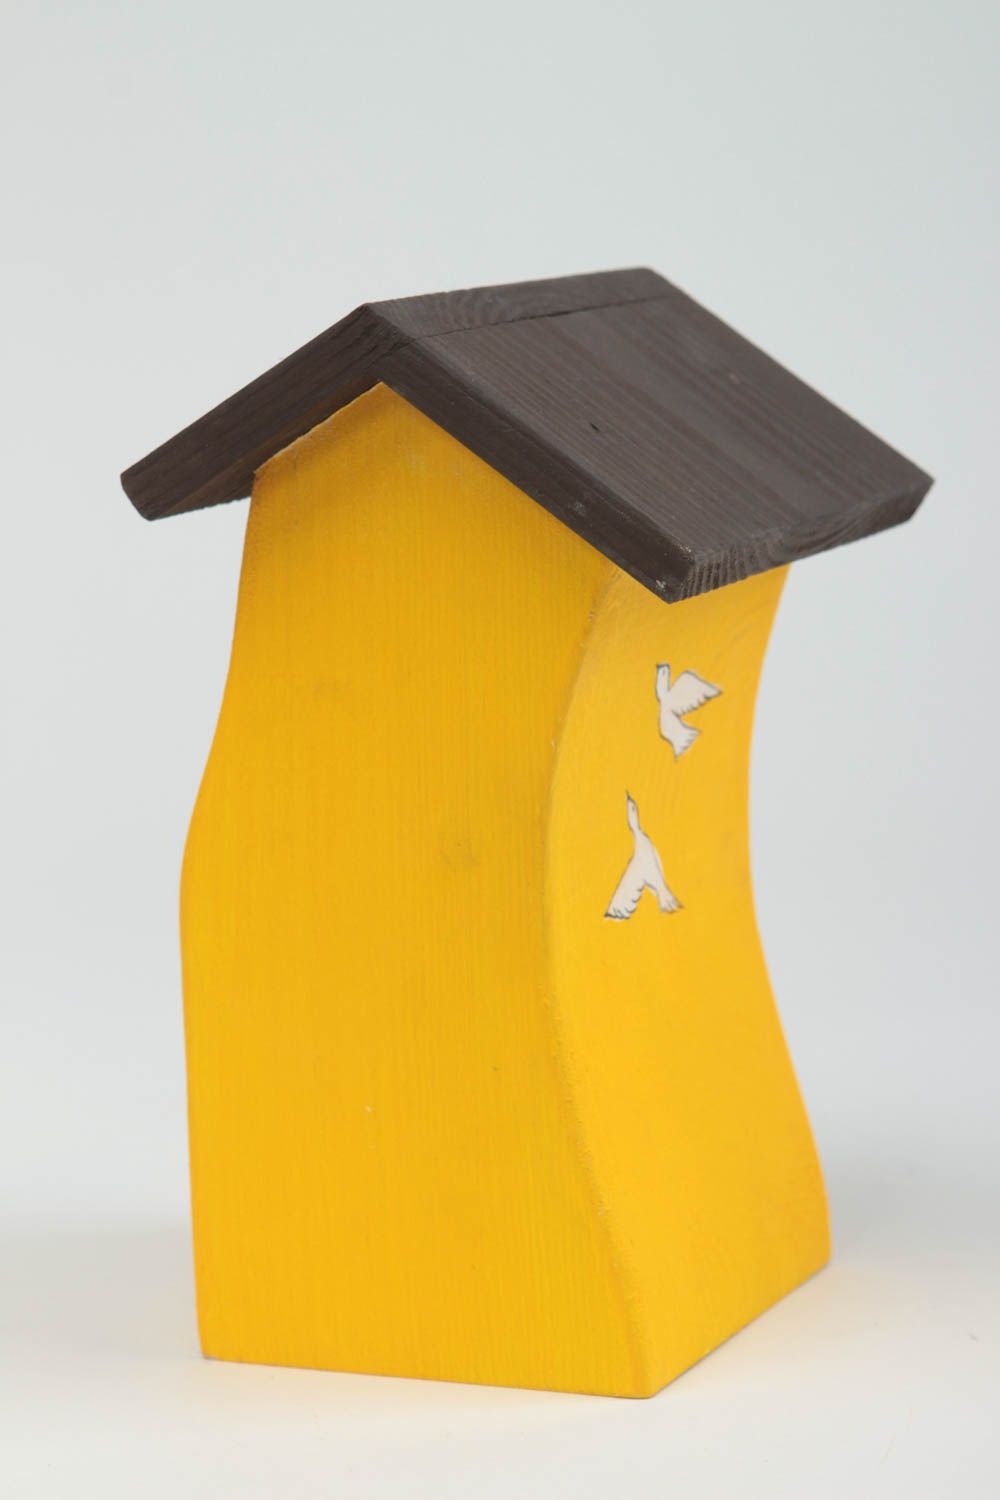 Wood sculpture wooden figurine handmade home decor housewarming gift ideas photo 3